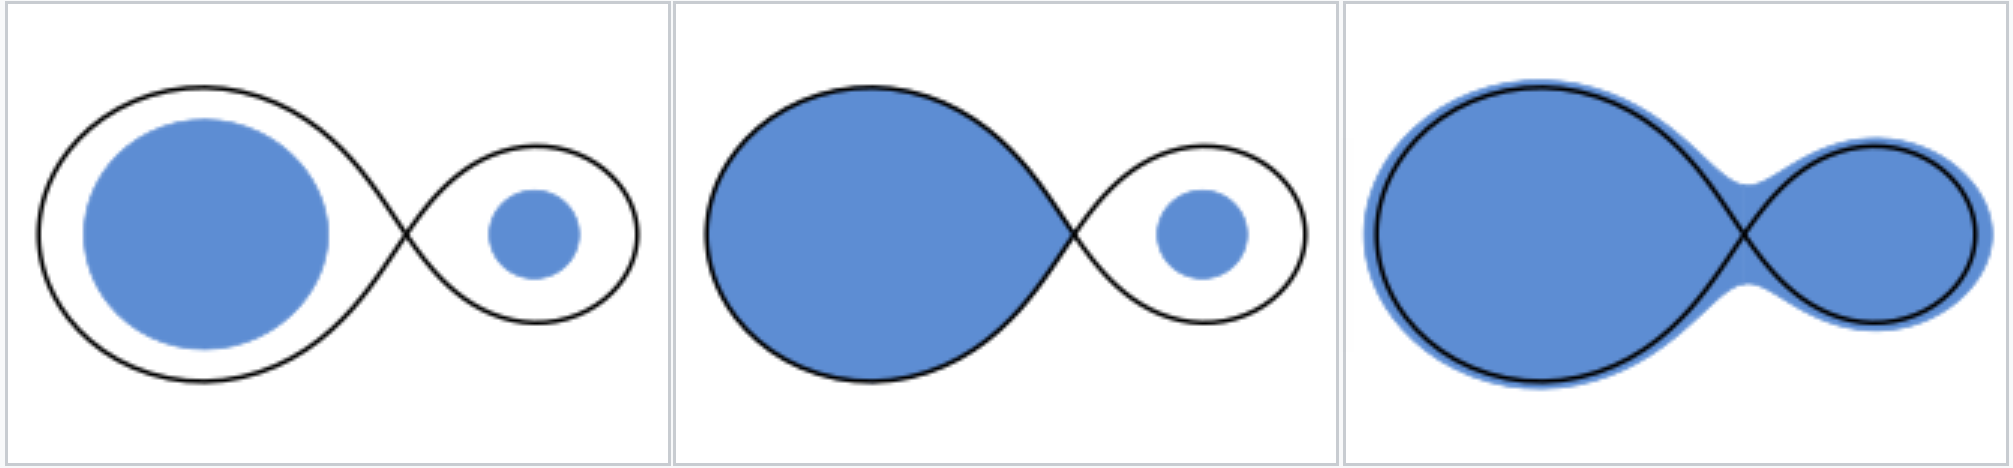 Schematyczny widok układu podwójnego widocznego „z boku” (nachylenie płaszczyzny orbity 90°) ze składnikami gwiazdowymi o stosunku mas = 3, które są rozdzielone (po lewej), półrozdzielone (w środku) i kontaktowe (po prawej). Czarne linie reprezentują graniczne powierzchnie równego potencjału Roche’a (tutaj dominuje pole grawitacyjne tylko jednej gwiazdy). Faktyczne rozmiary gwiazd są zakreślone na niebiesko i niekoniecznie mają kształt kulisty. Źródło: Wikipedia (wersja angielskojęzyczna) – gwiazdy podwójne